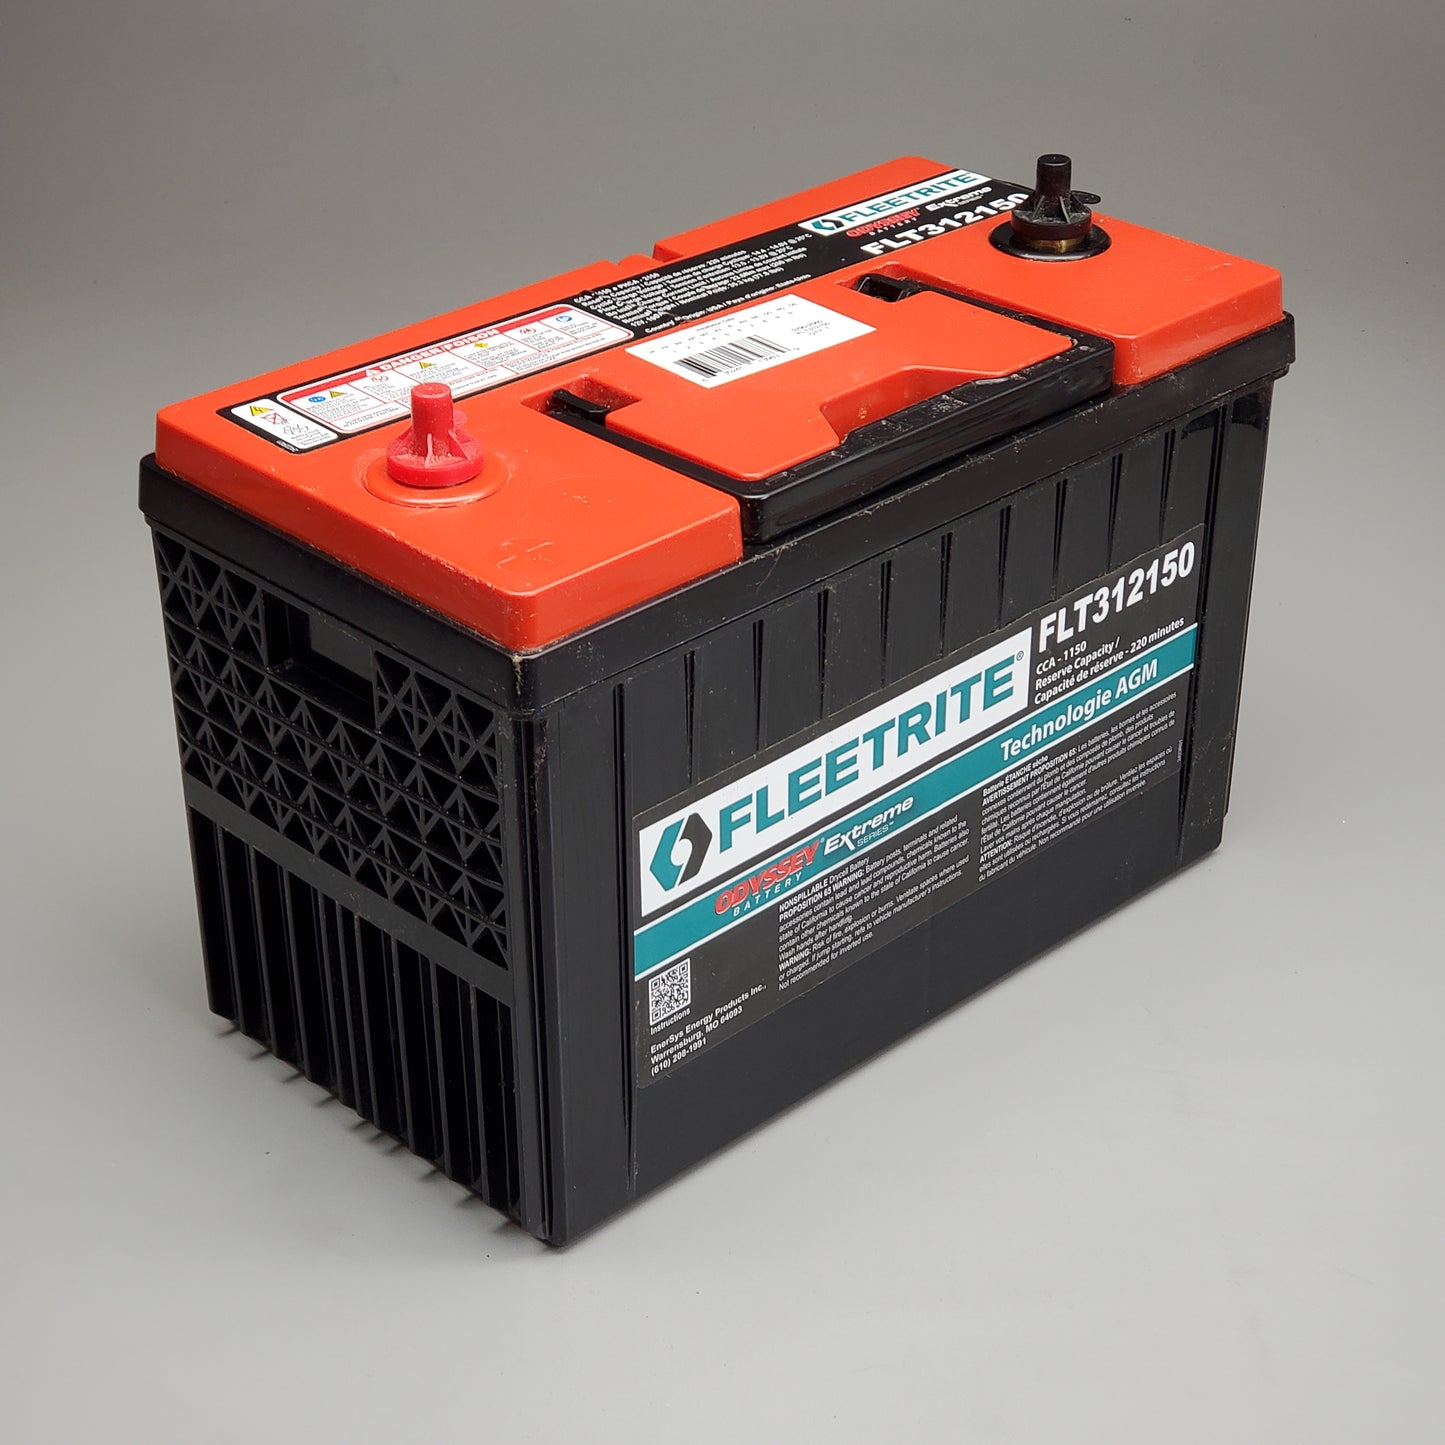 FLEETRITE Navistar Genuine Non-Spillable Vehicle Battery FLT312150 (New)